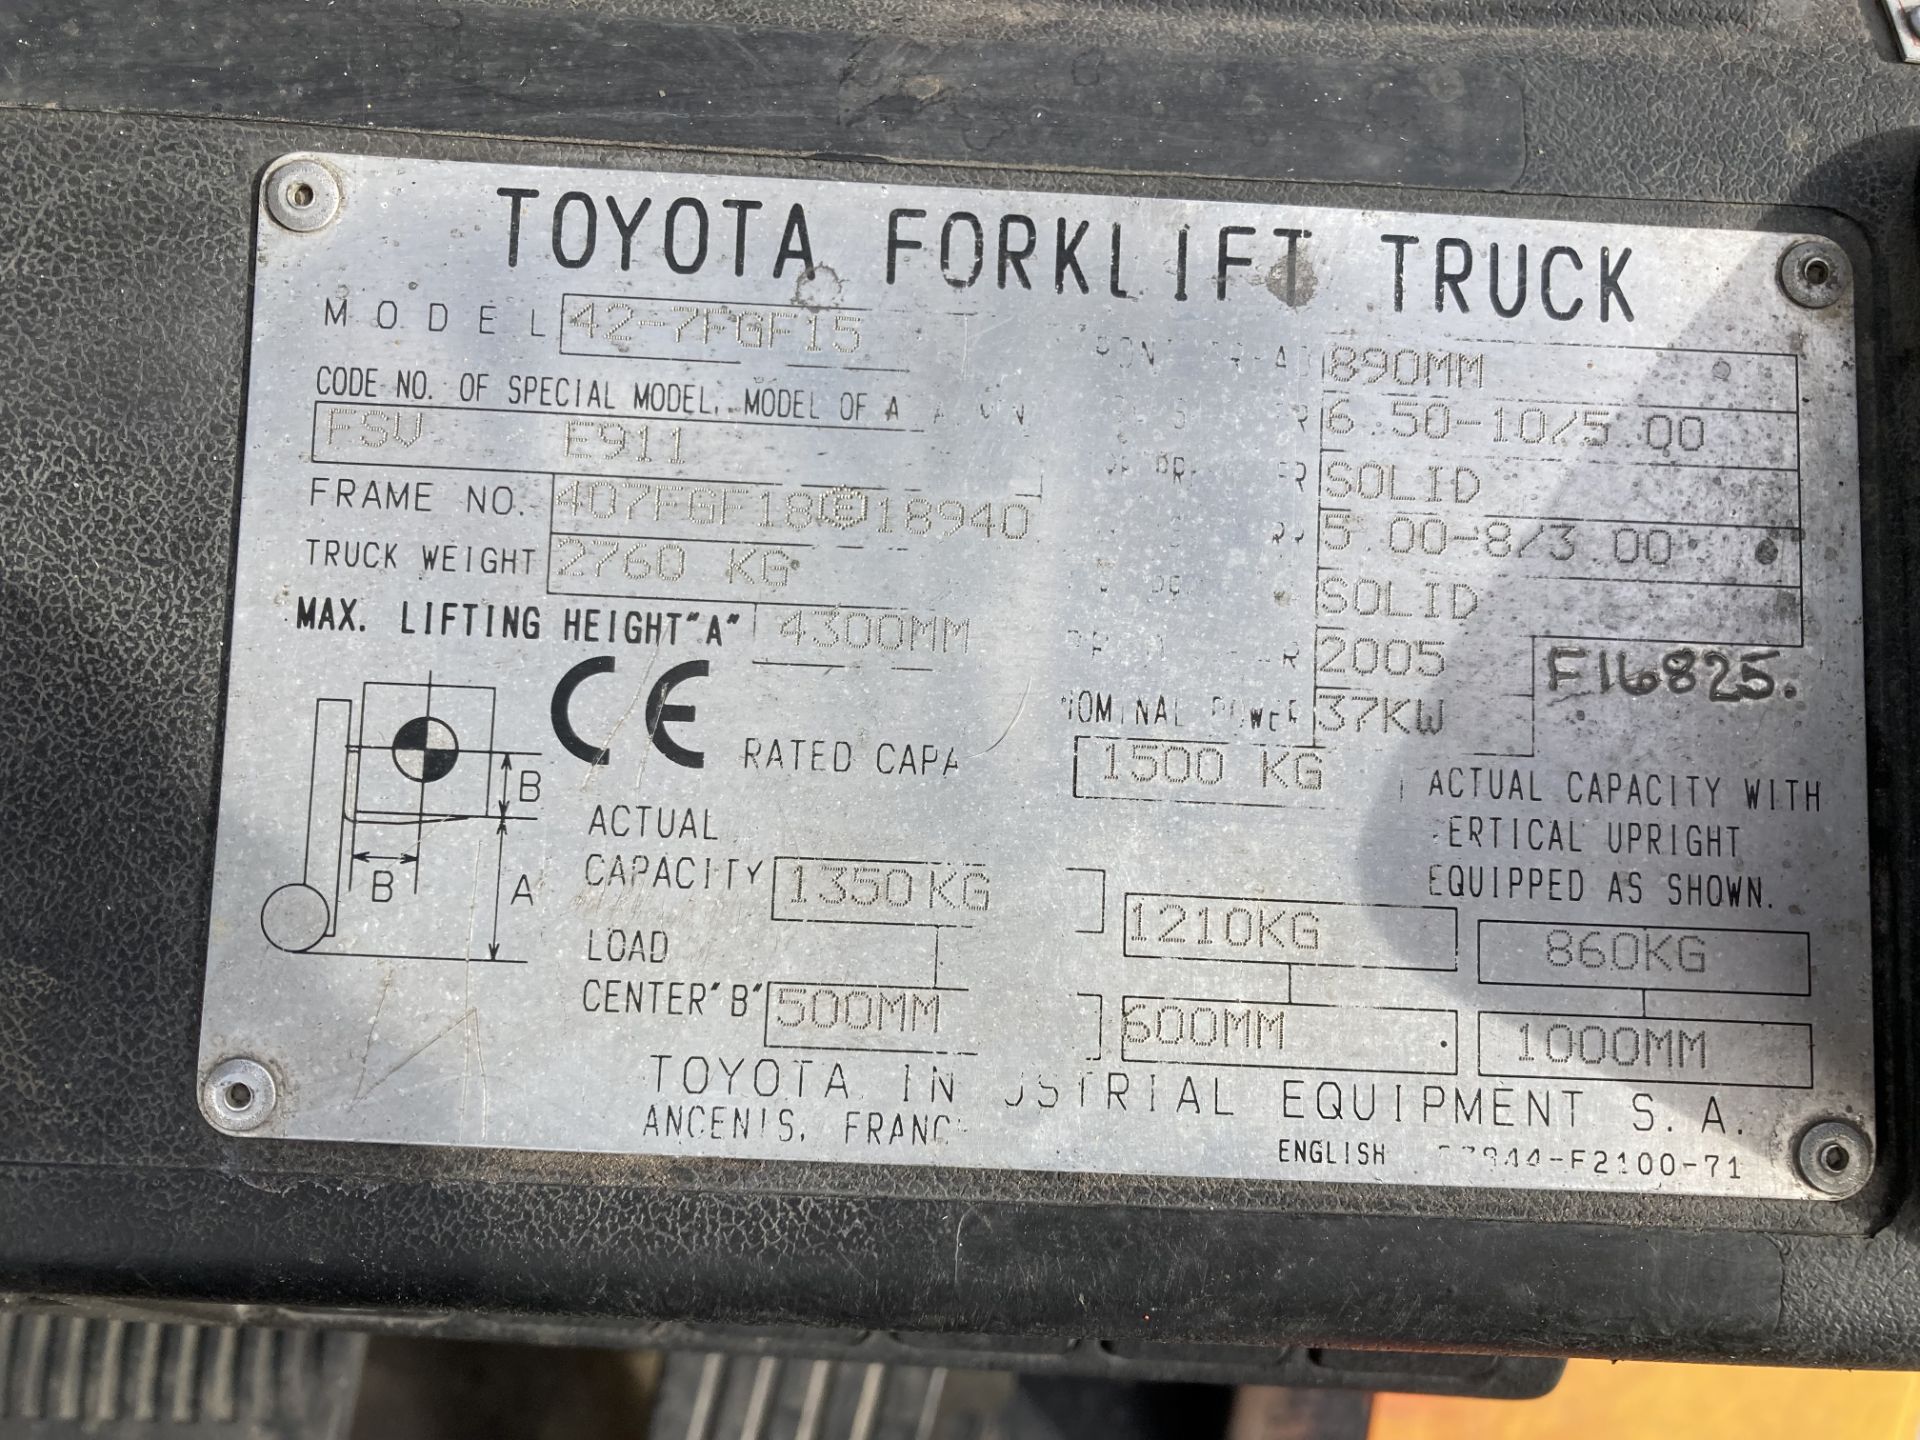 TOYOTA 1.5 tonne gas forklift truck model no: 42-7FGF15 - side shift - orange/grey. - Image 4 of 7